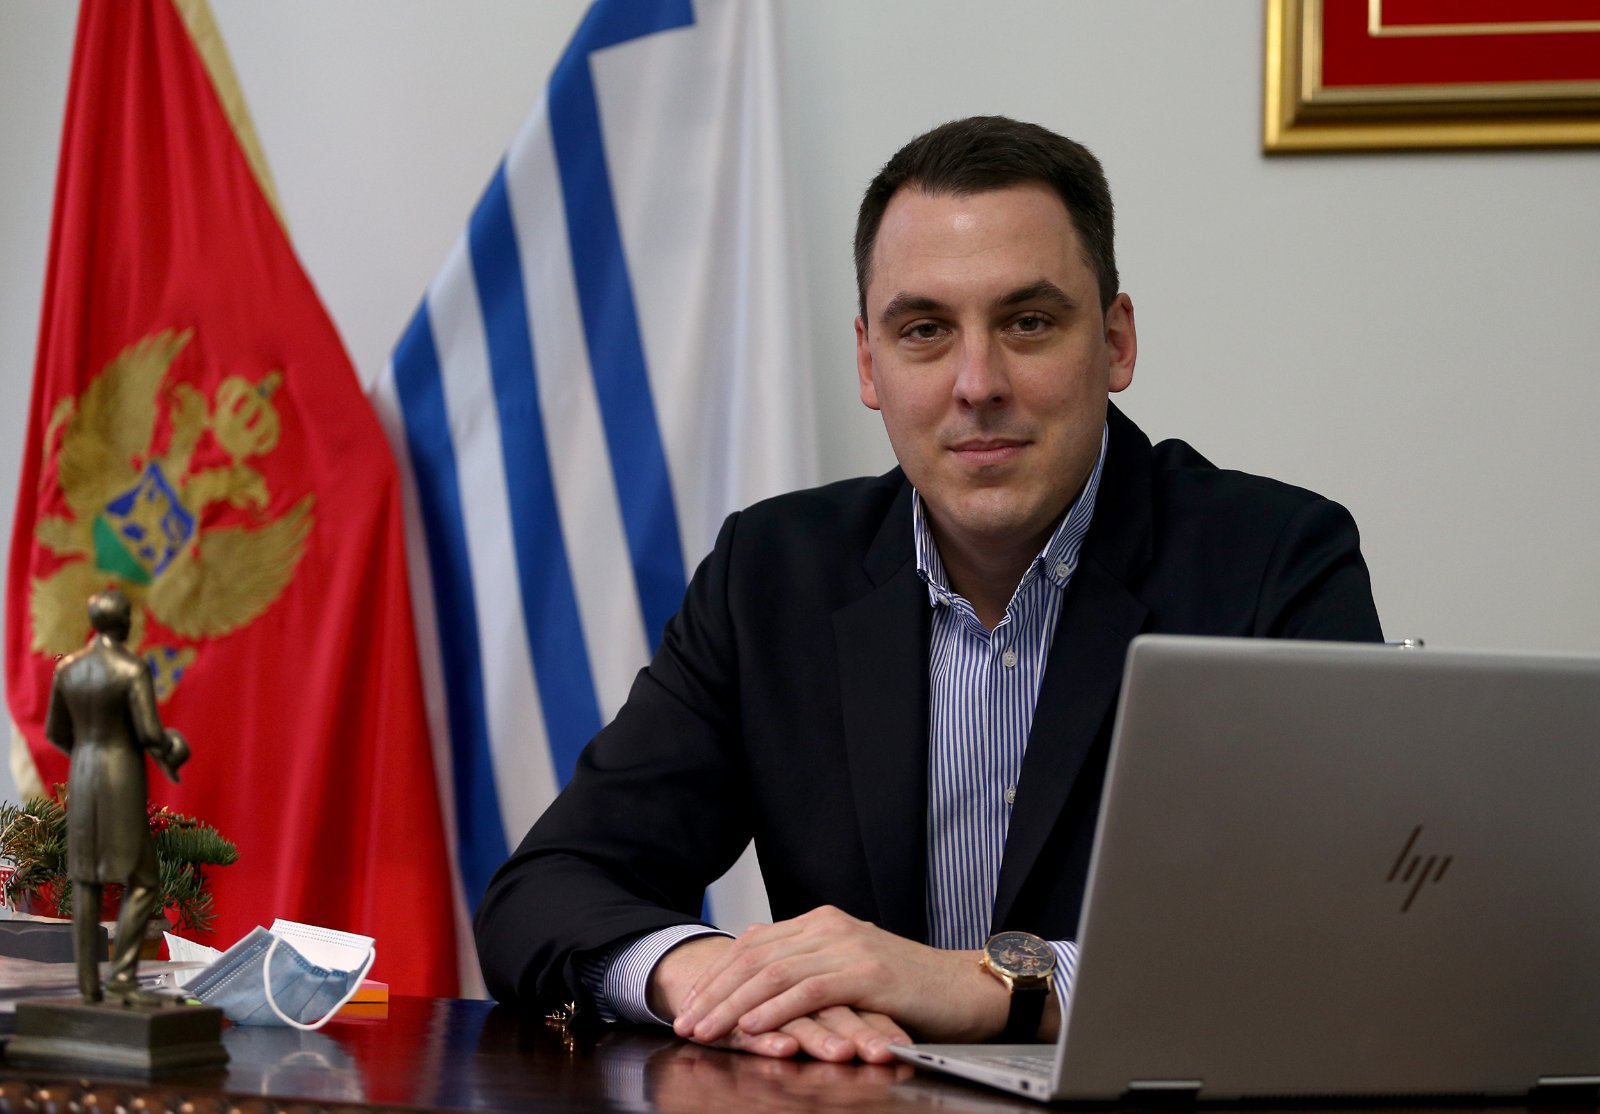 Vuković: Srpski ministar otvoreno prijeti, hoće li Vlada CG reagovati?